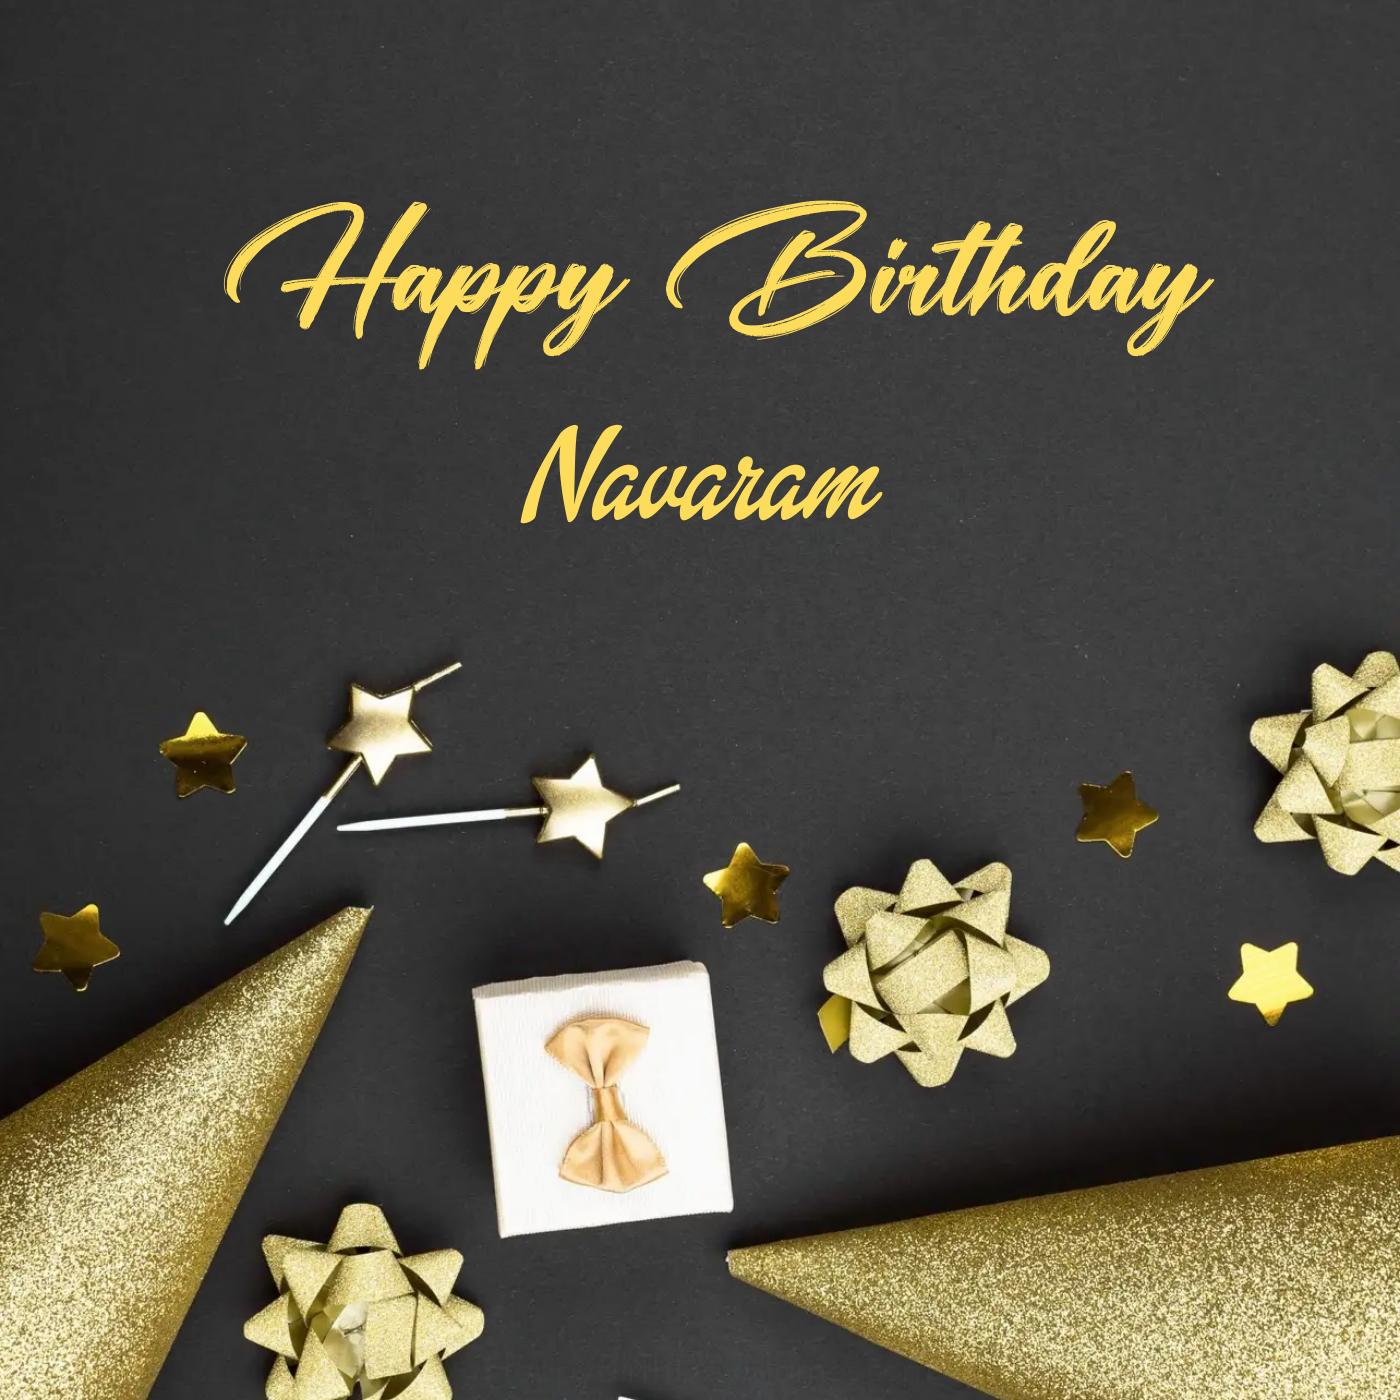 Happy Birthday Navaram Golden Theme Card